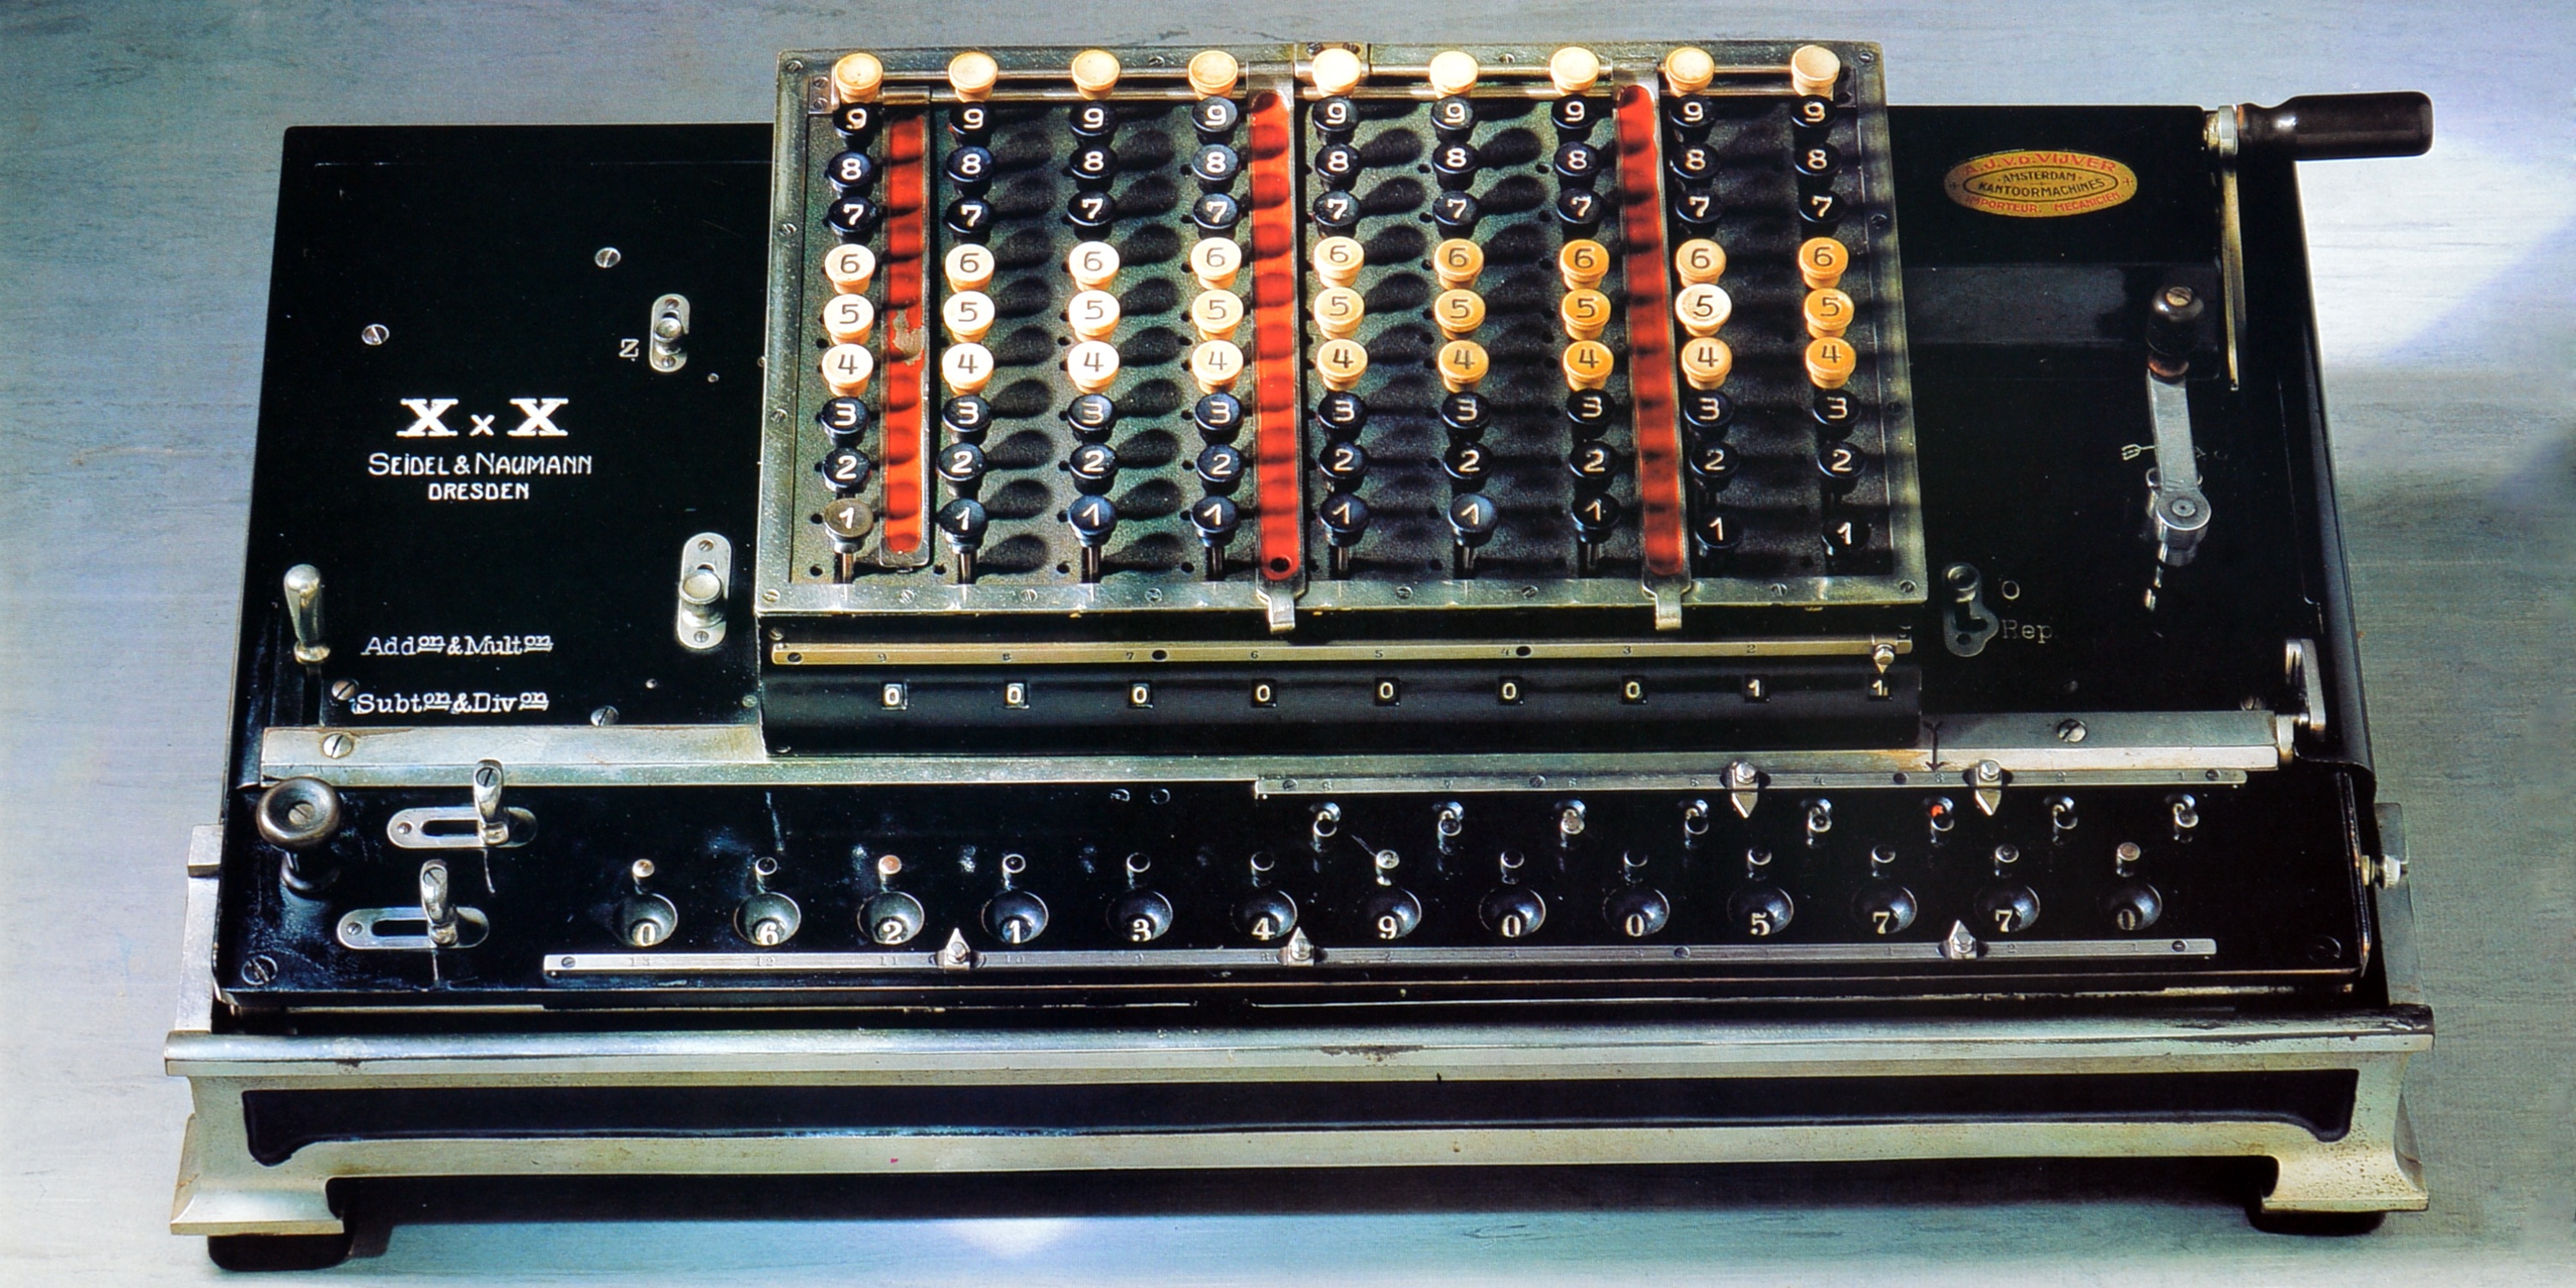 XxX - Rechenmaschine (Heinz Nixdorf MuseumsForum CC BY-NC-SA)